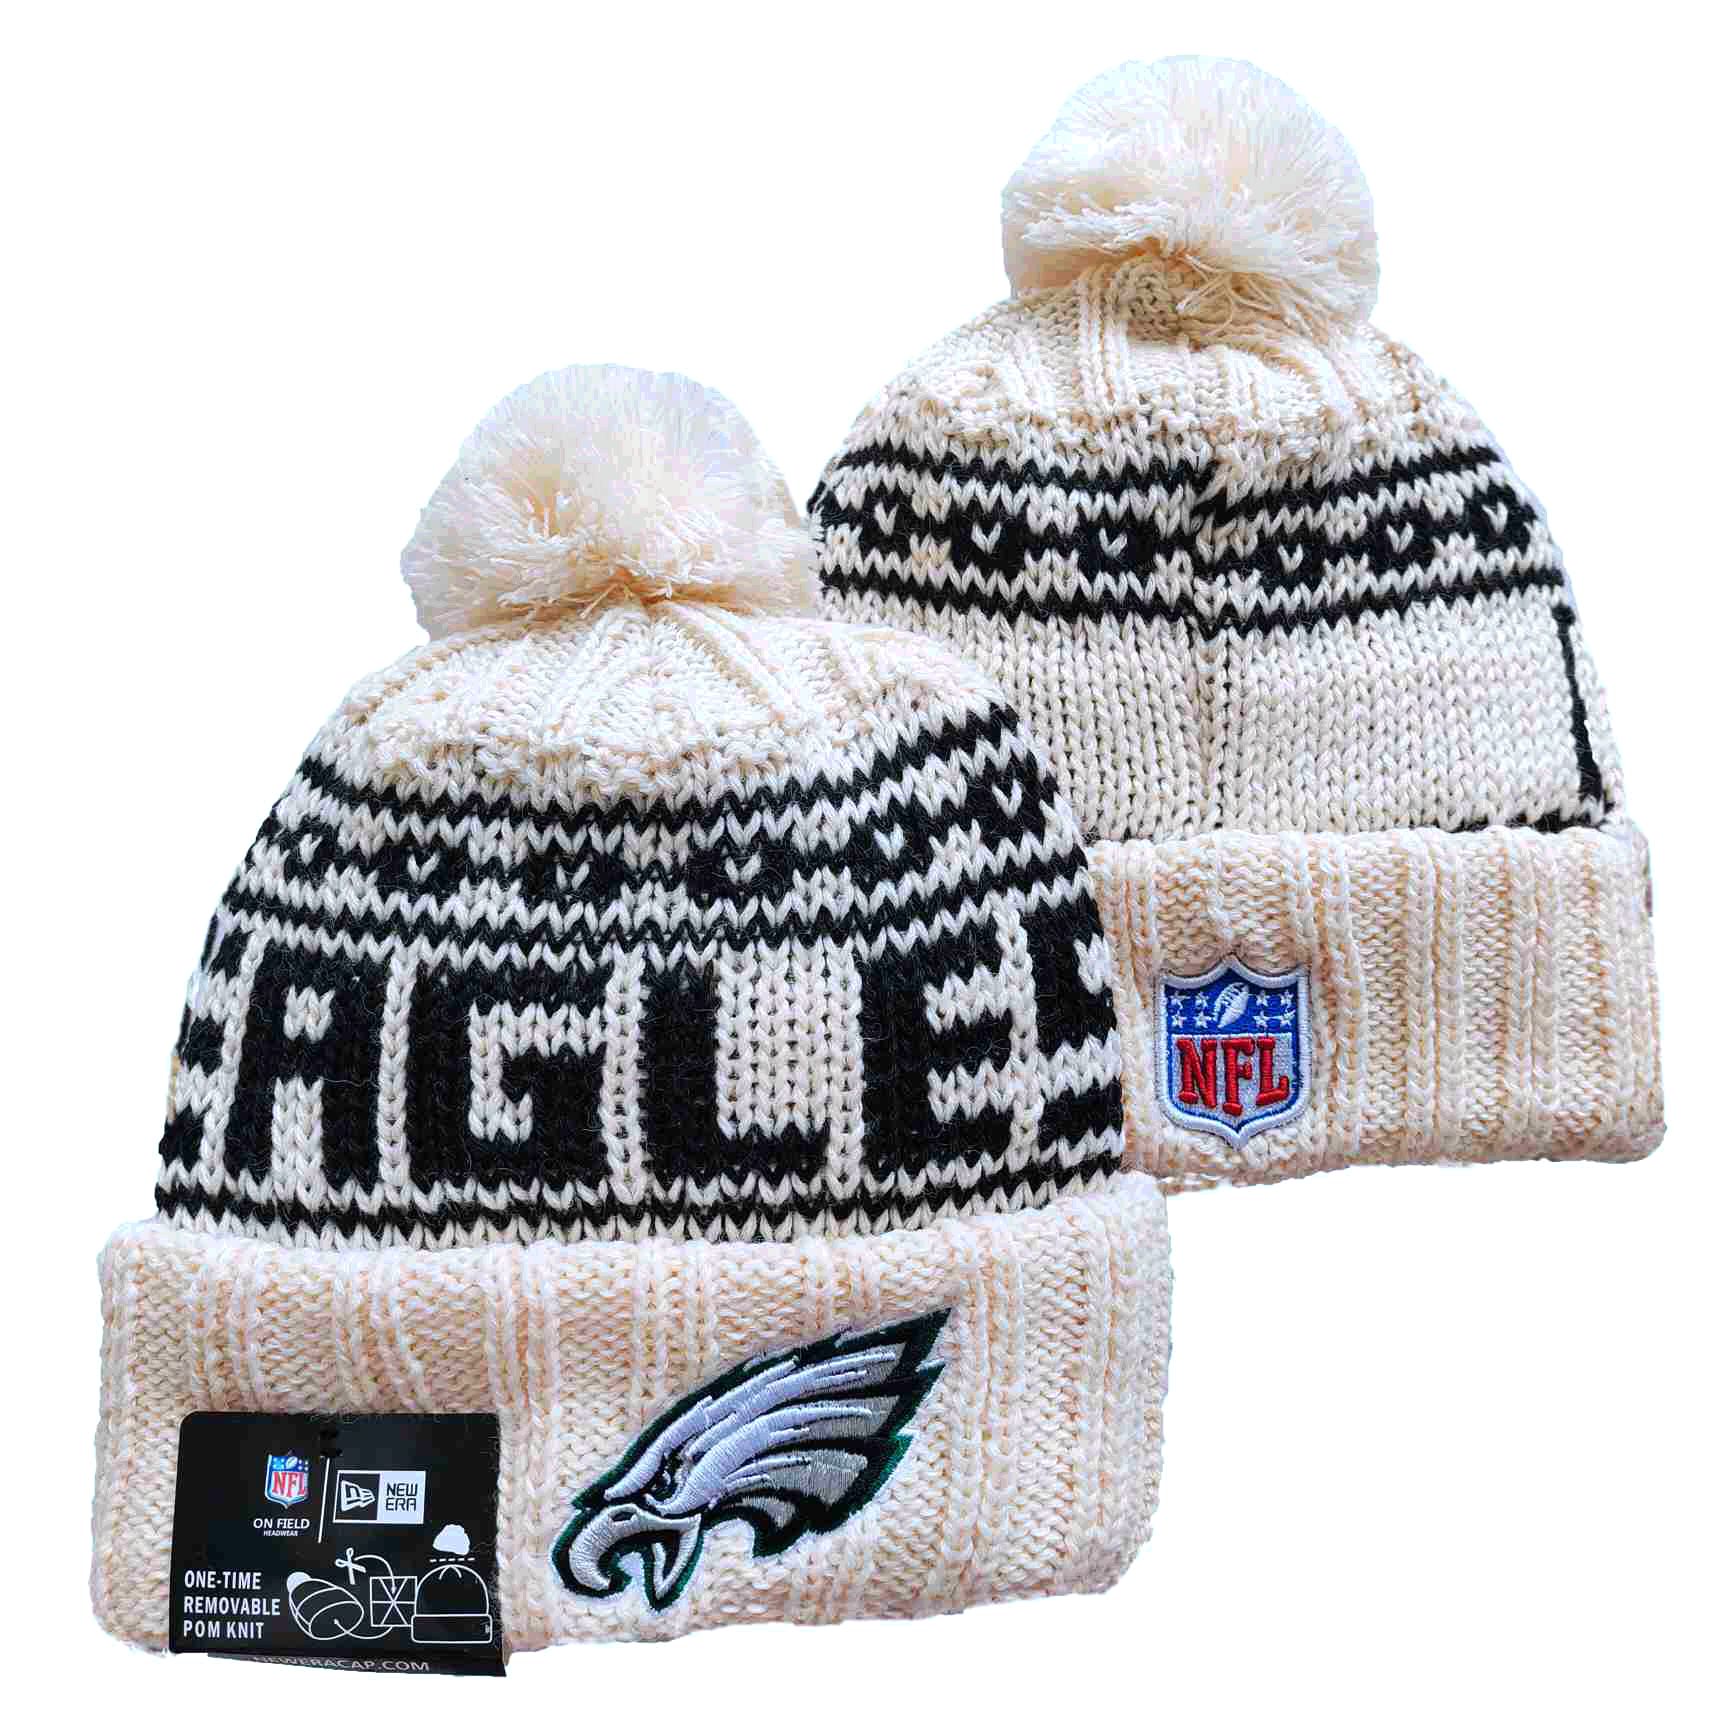 Eagles Team Logo Cream New Era Cuffed Knit Hat with Pom